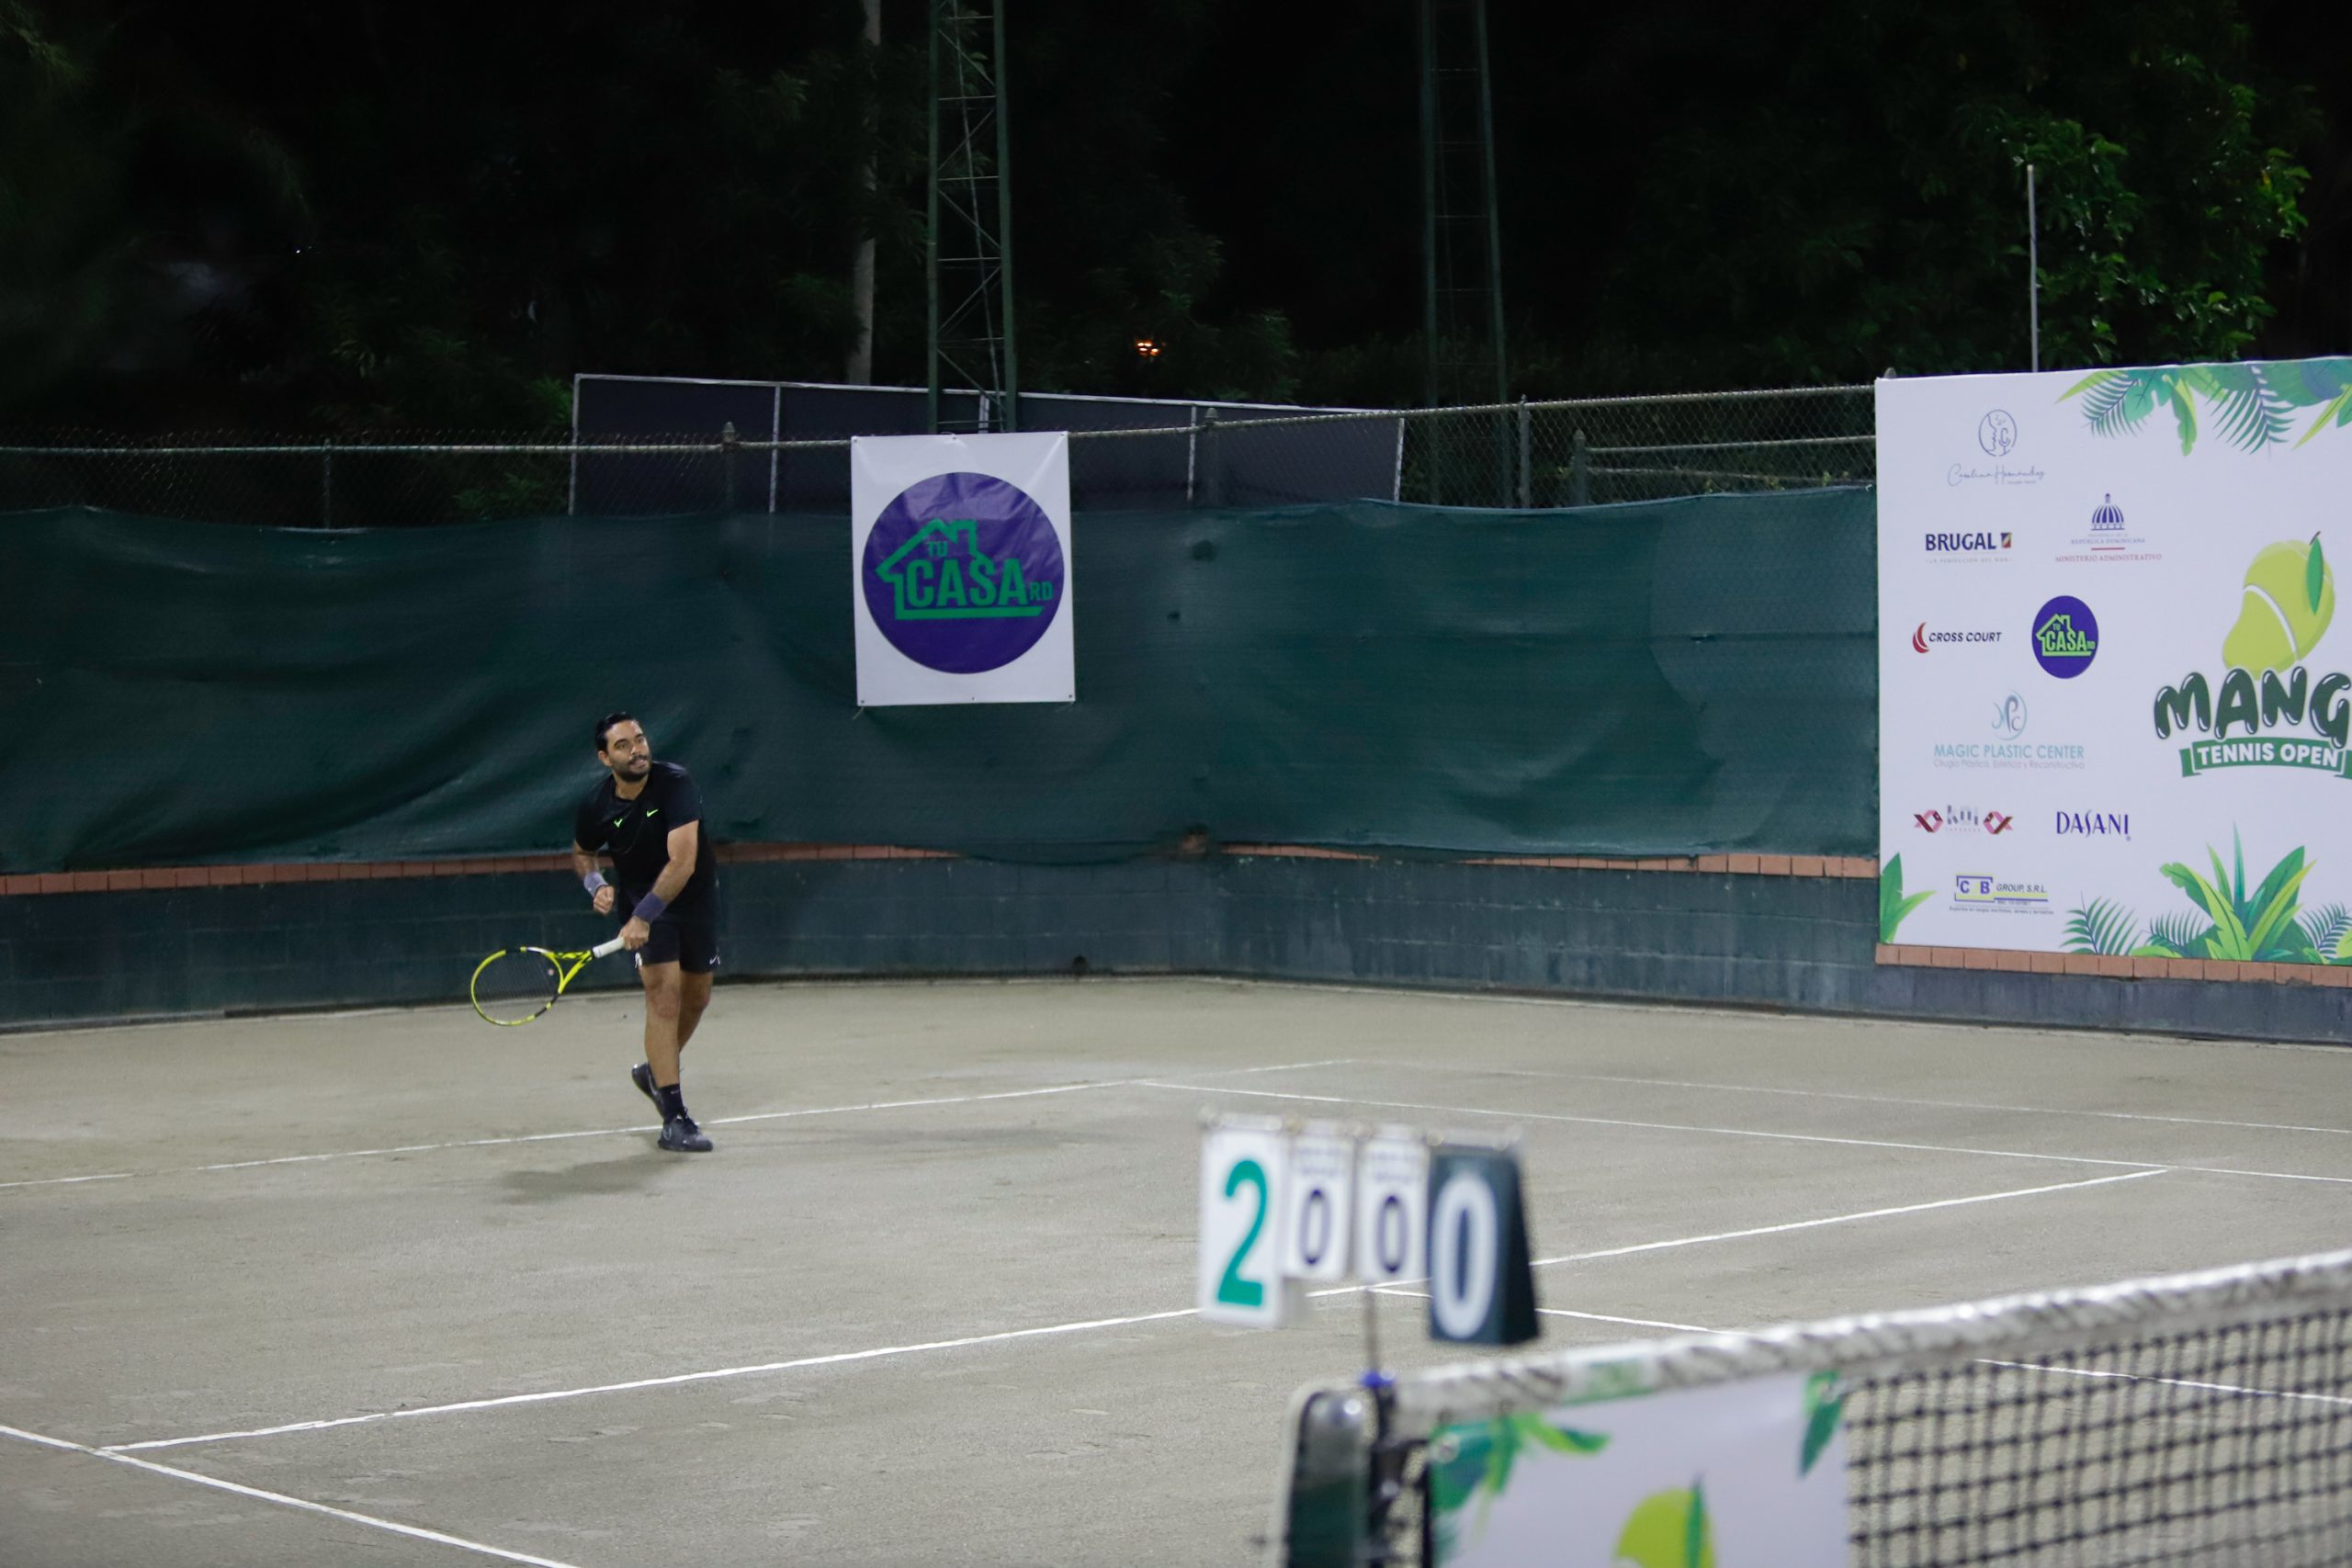 Más de 140 tenistas veteranos disputan el Mango Tennis Open 2021